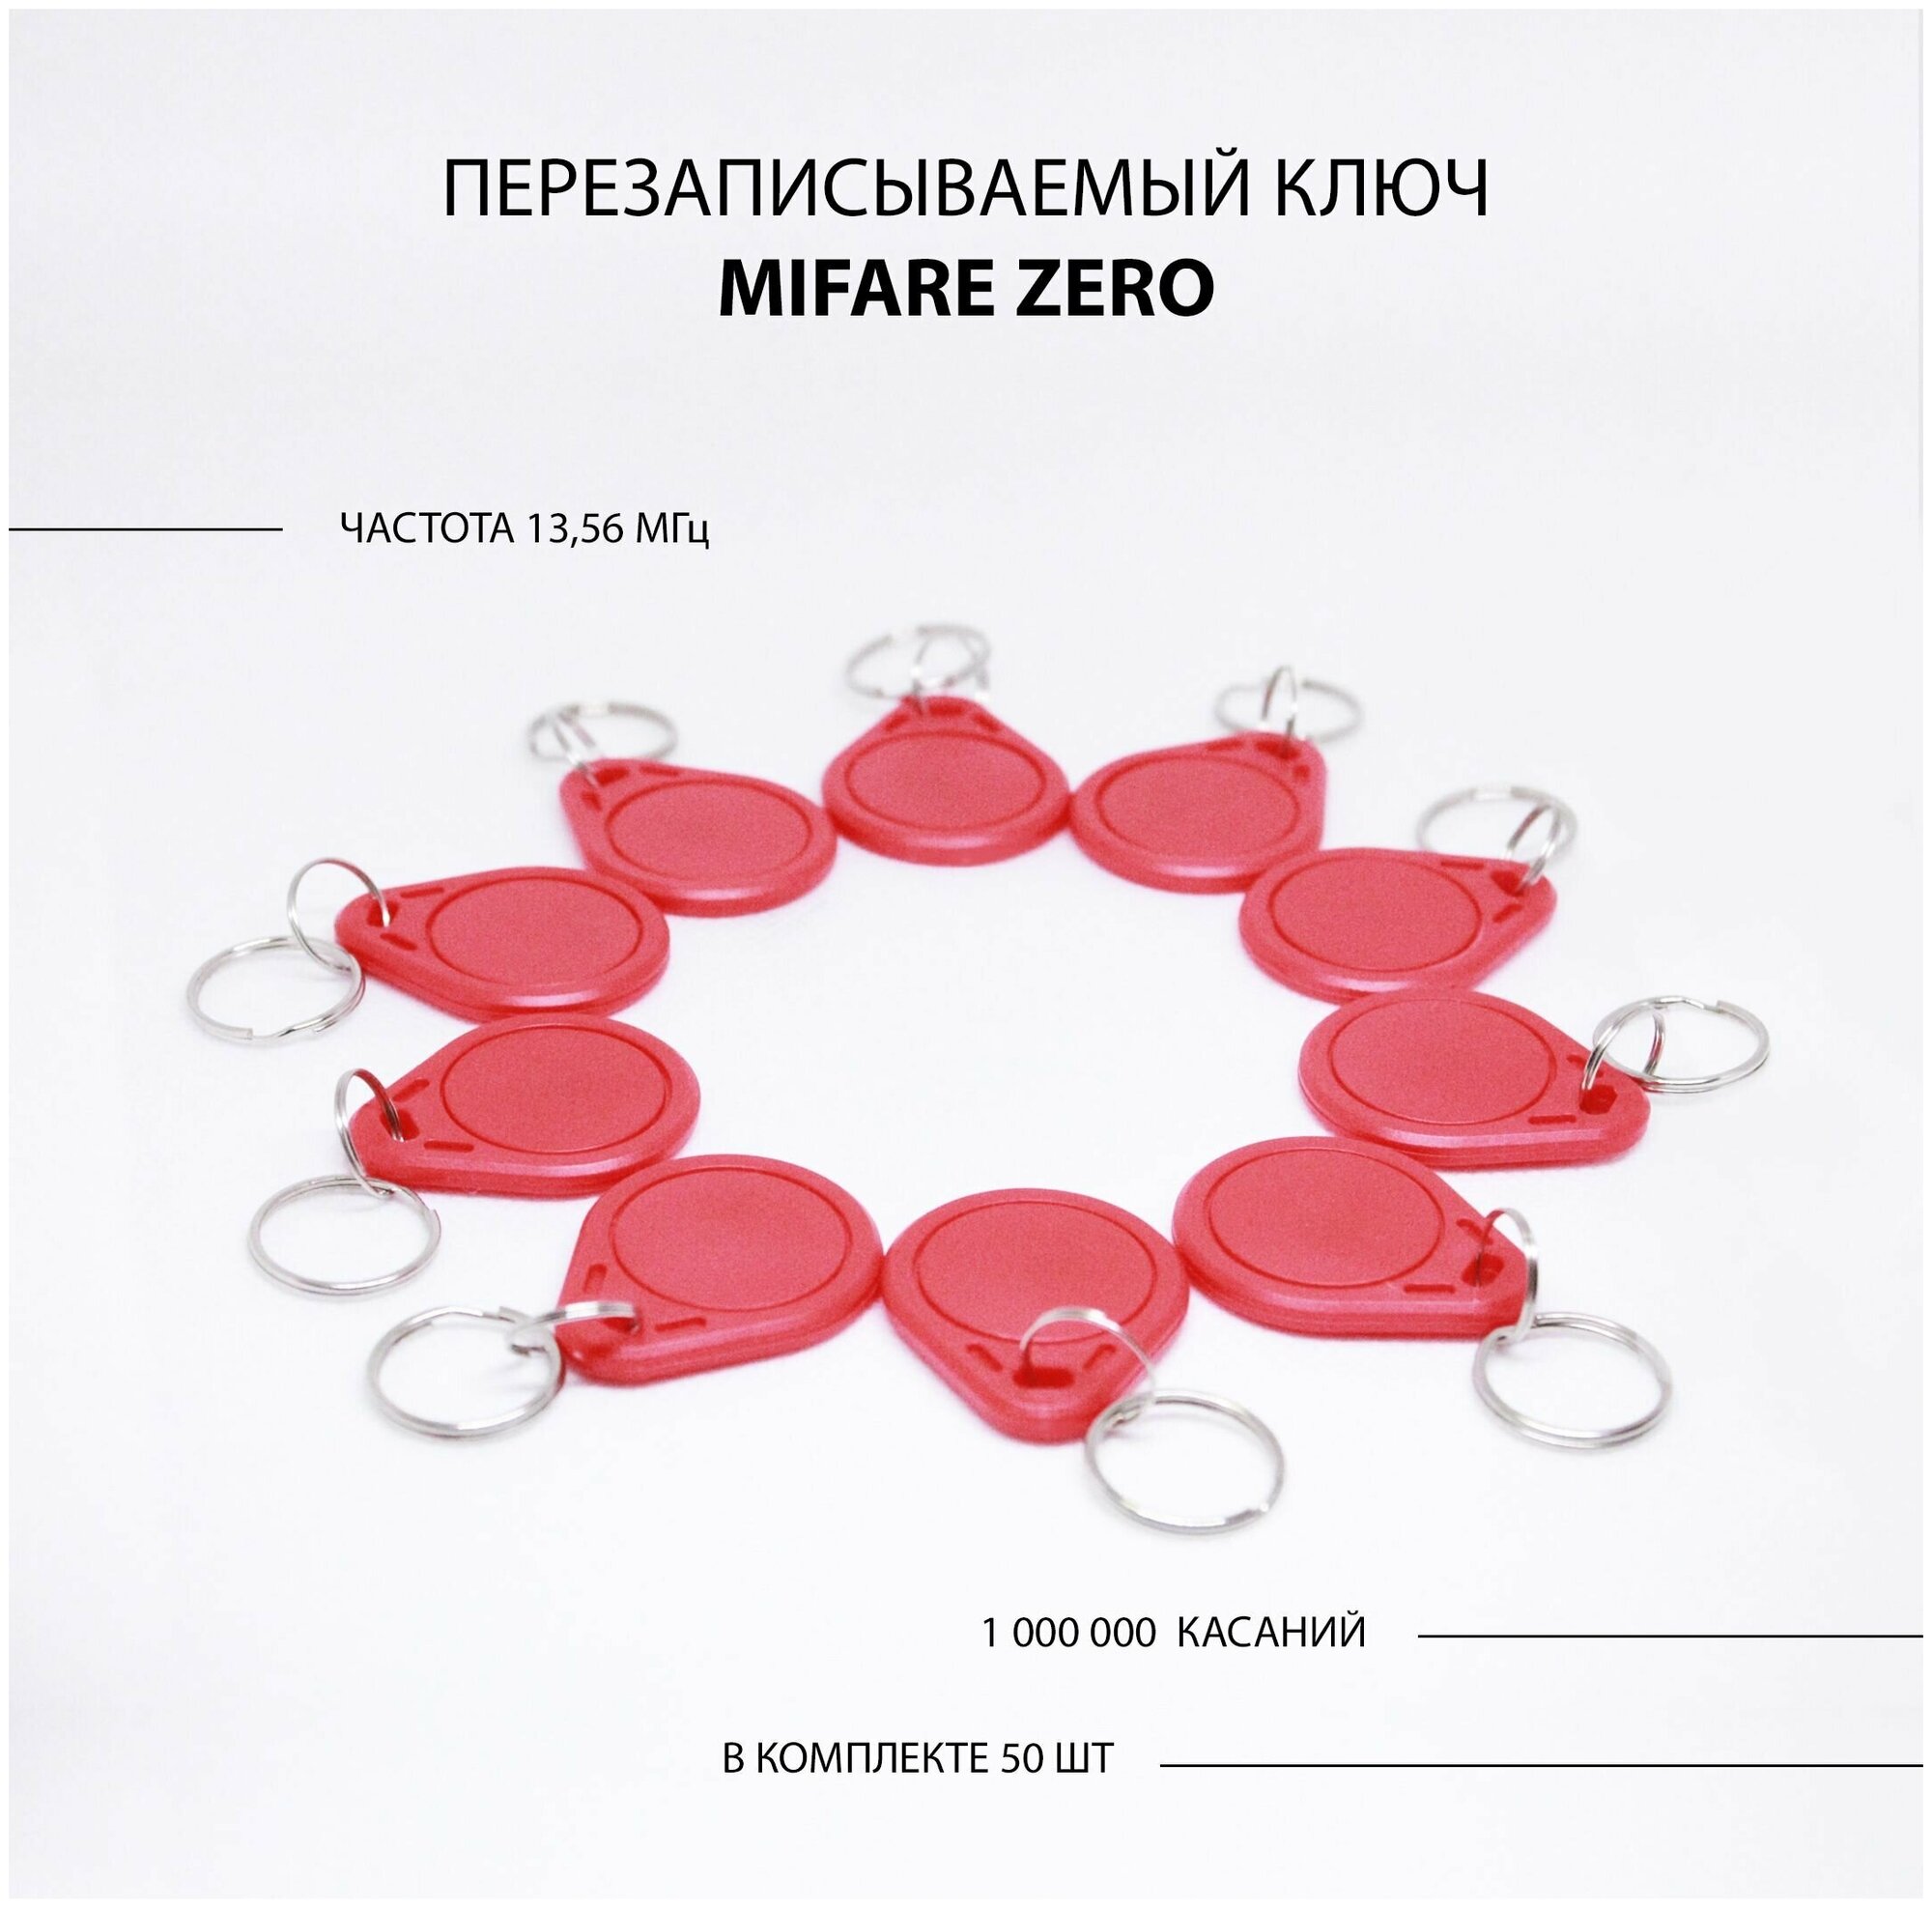 Ключ для домофона Mifare Zero 50шт перезаписываемый . Частота 13,56 МГц Цвет красный